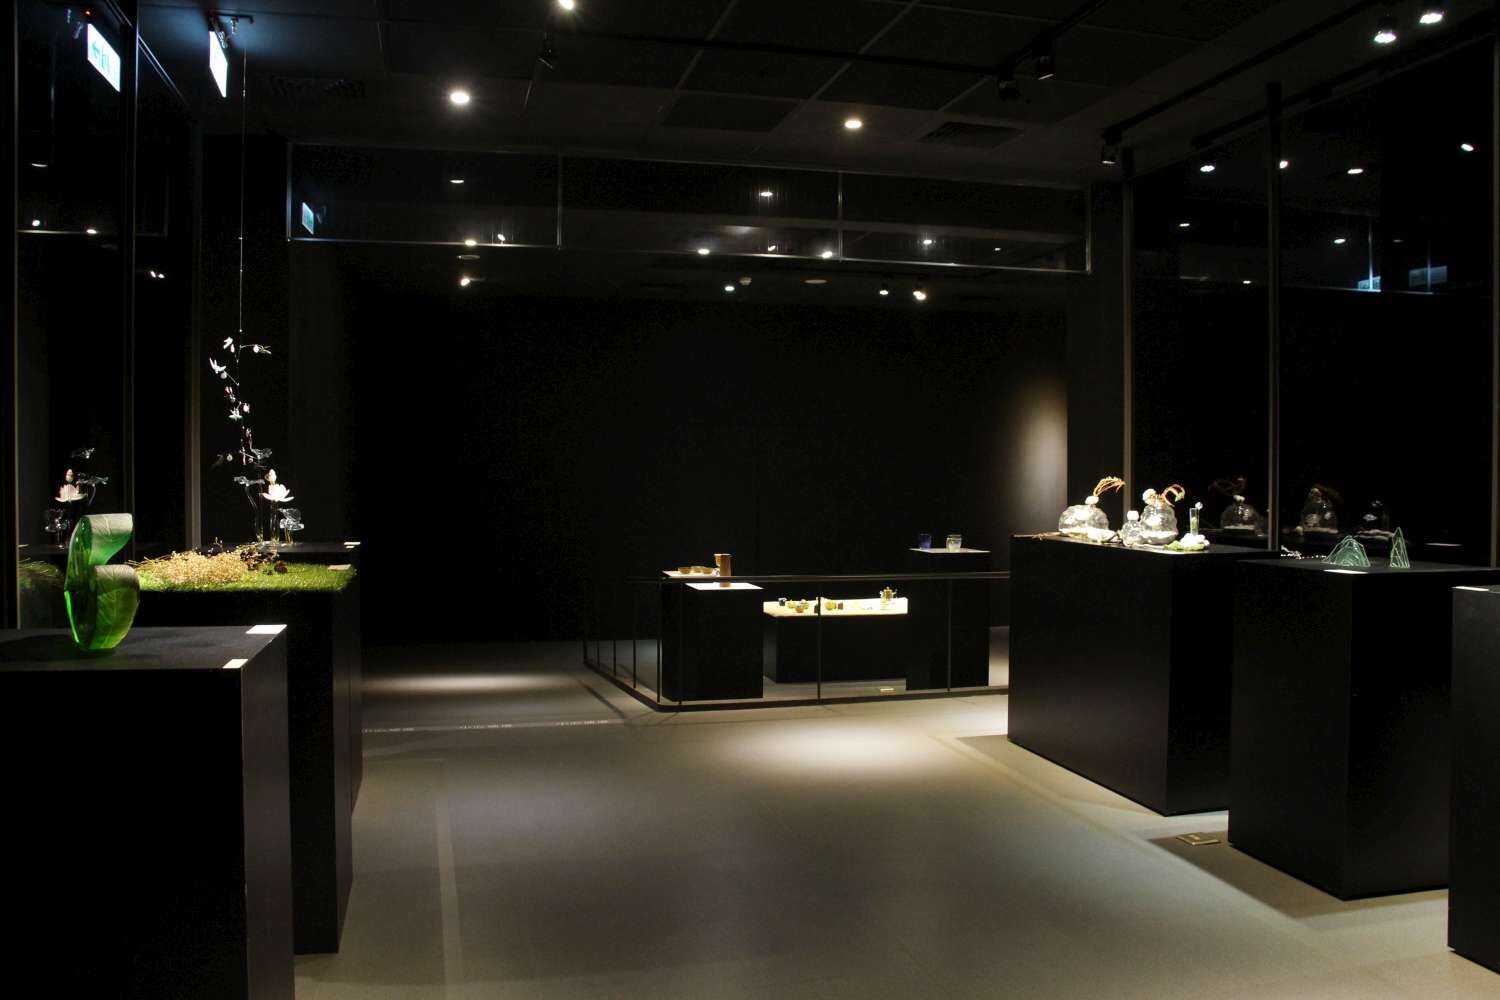 新竹市玻璃工藝博物館現正展出「一矽相承-玻璃藝術師生聯展」。